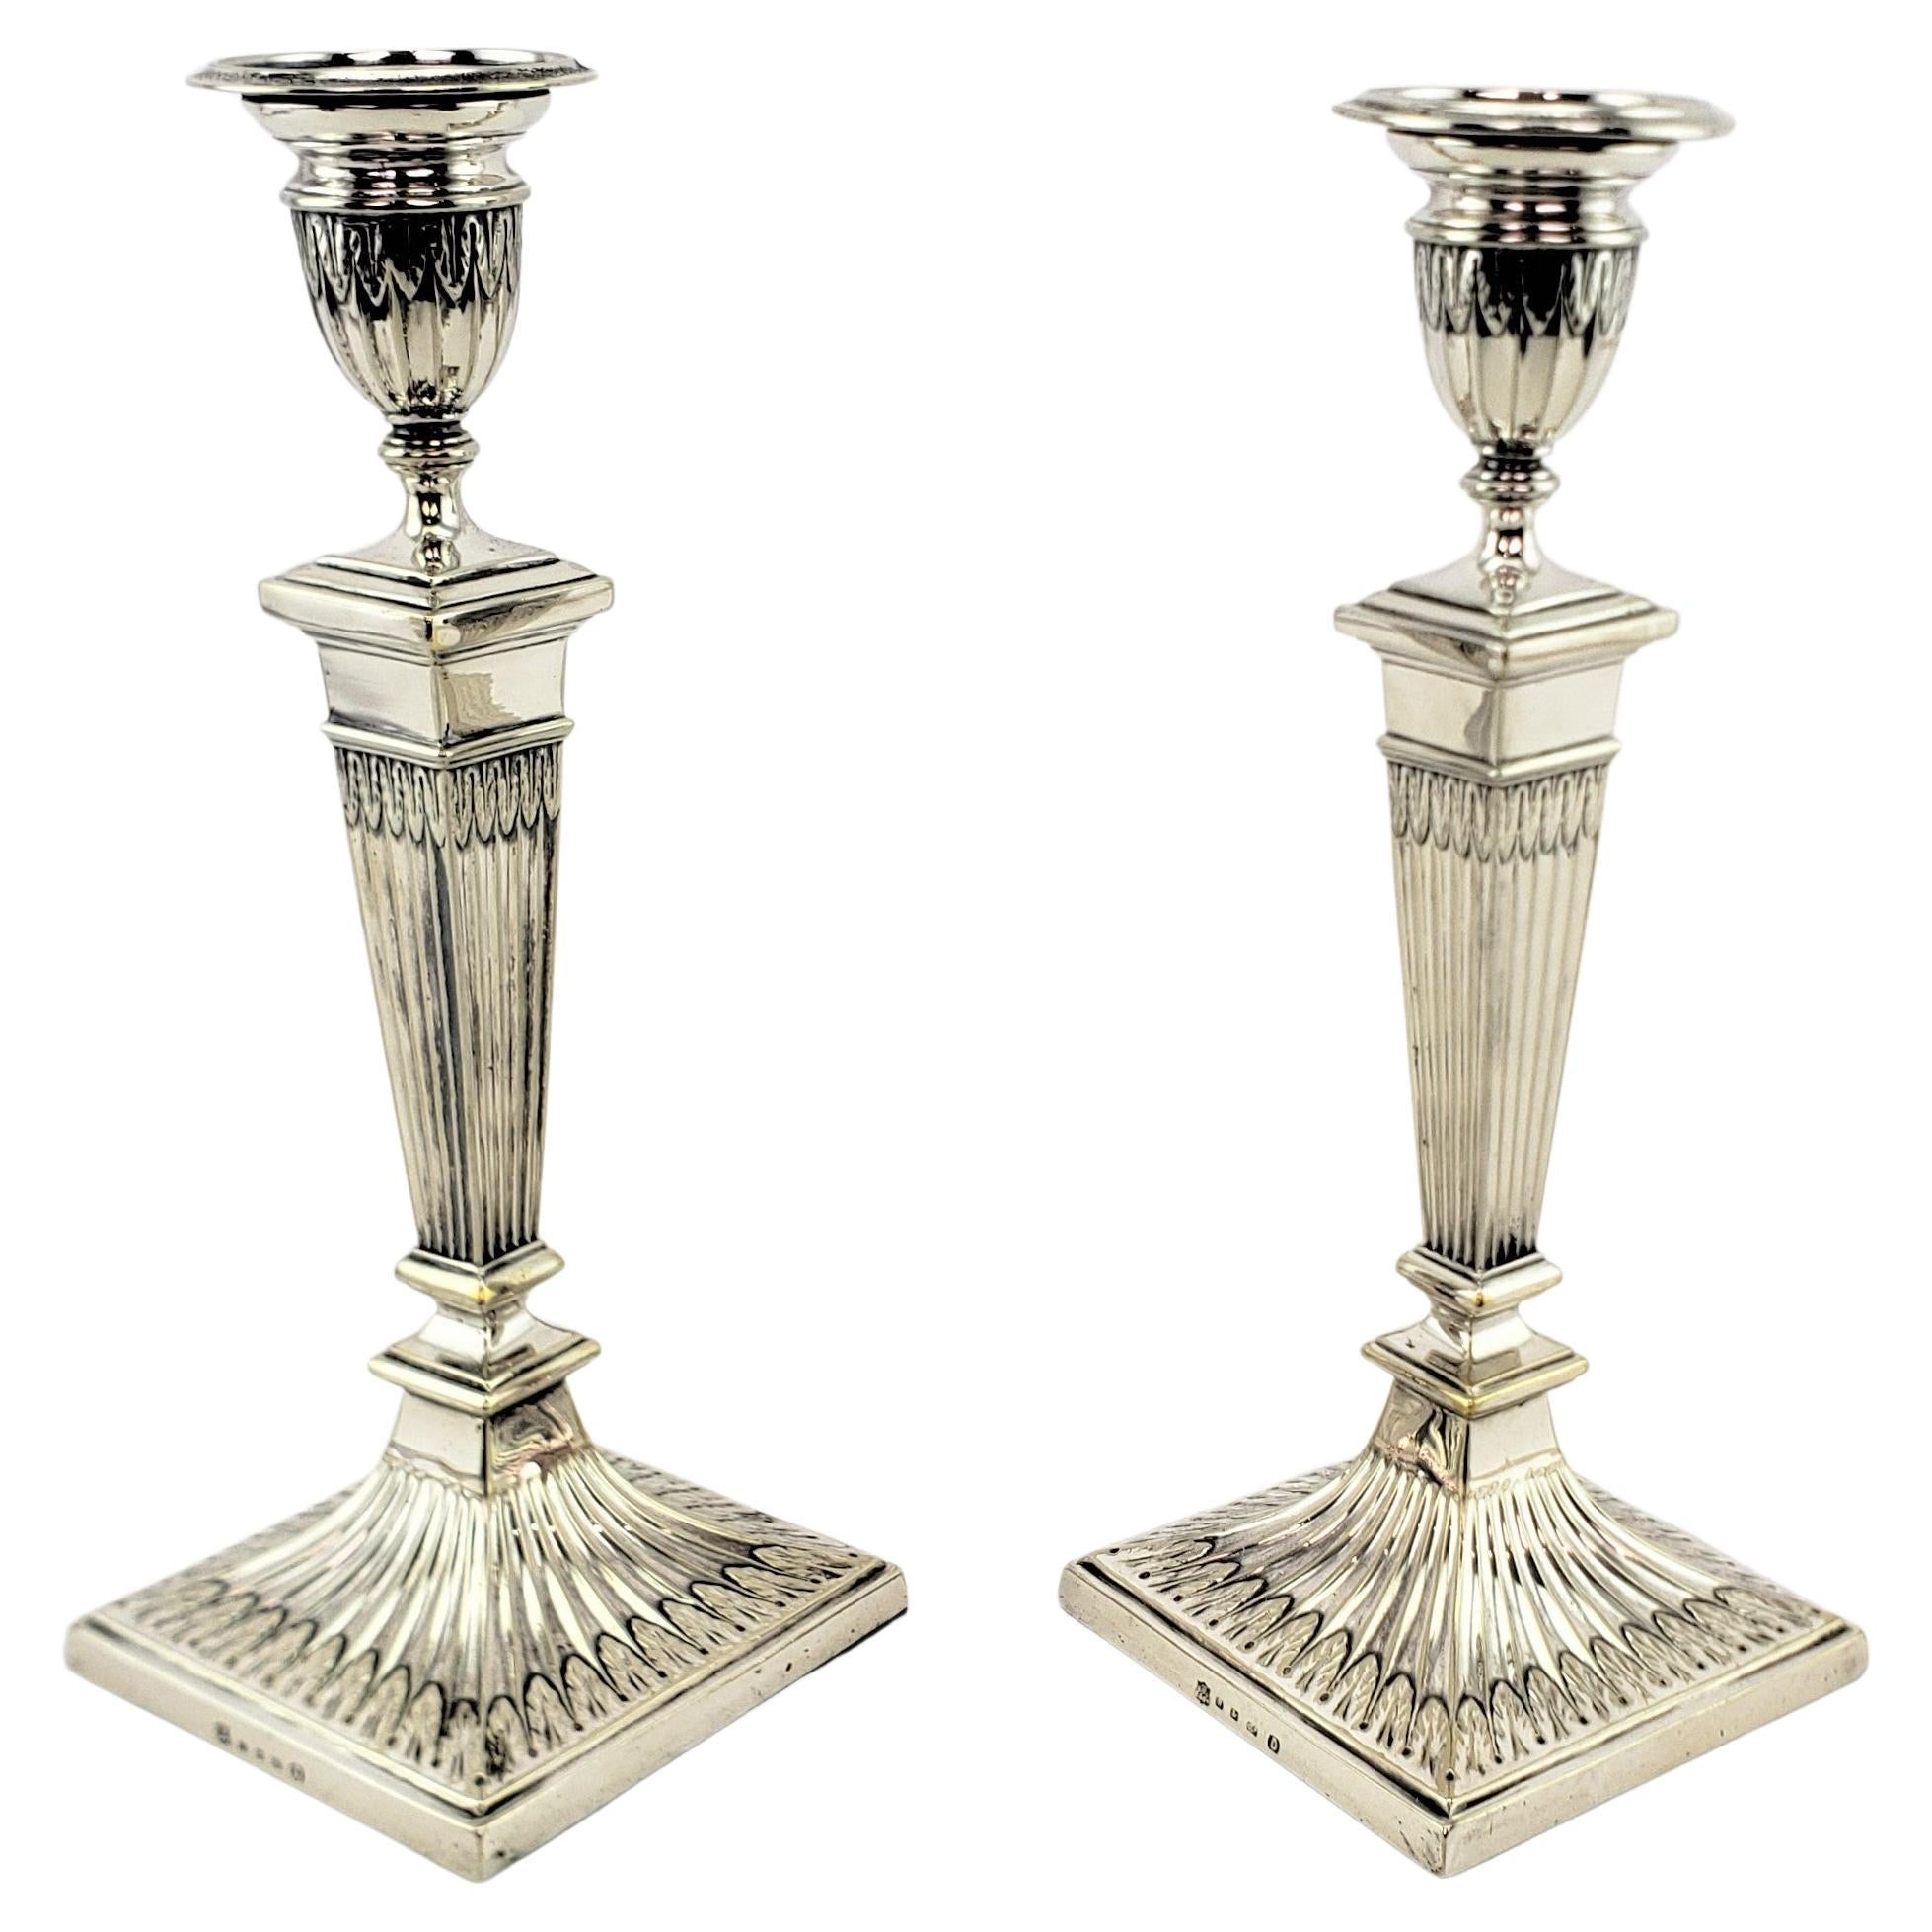 Paire de chandeliers Elkington anciens à colonne en métal argenté avec décoration de feuilles